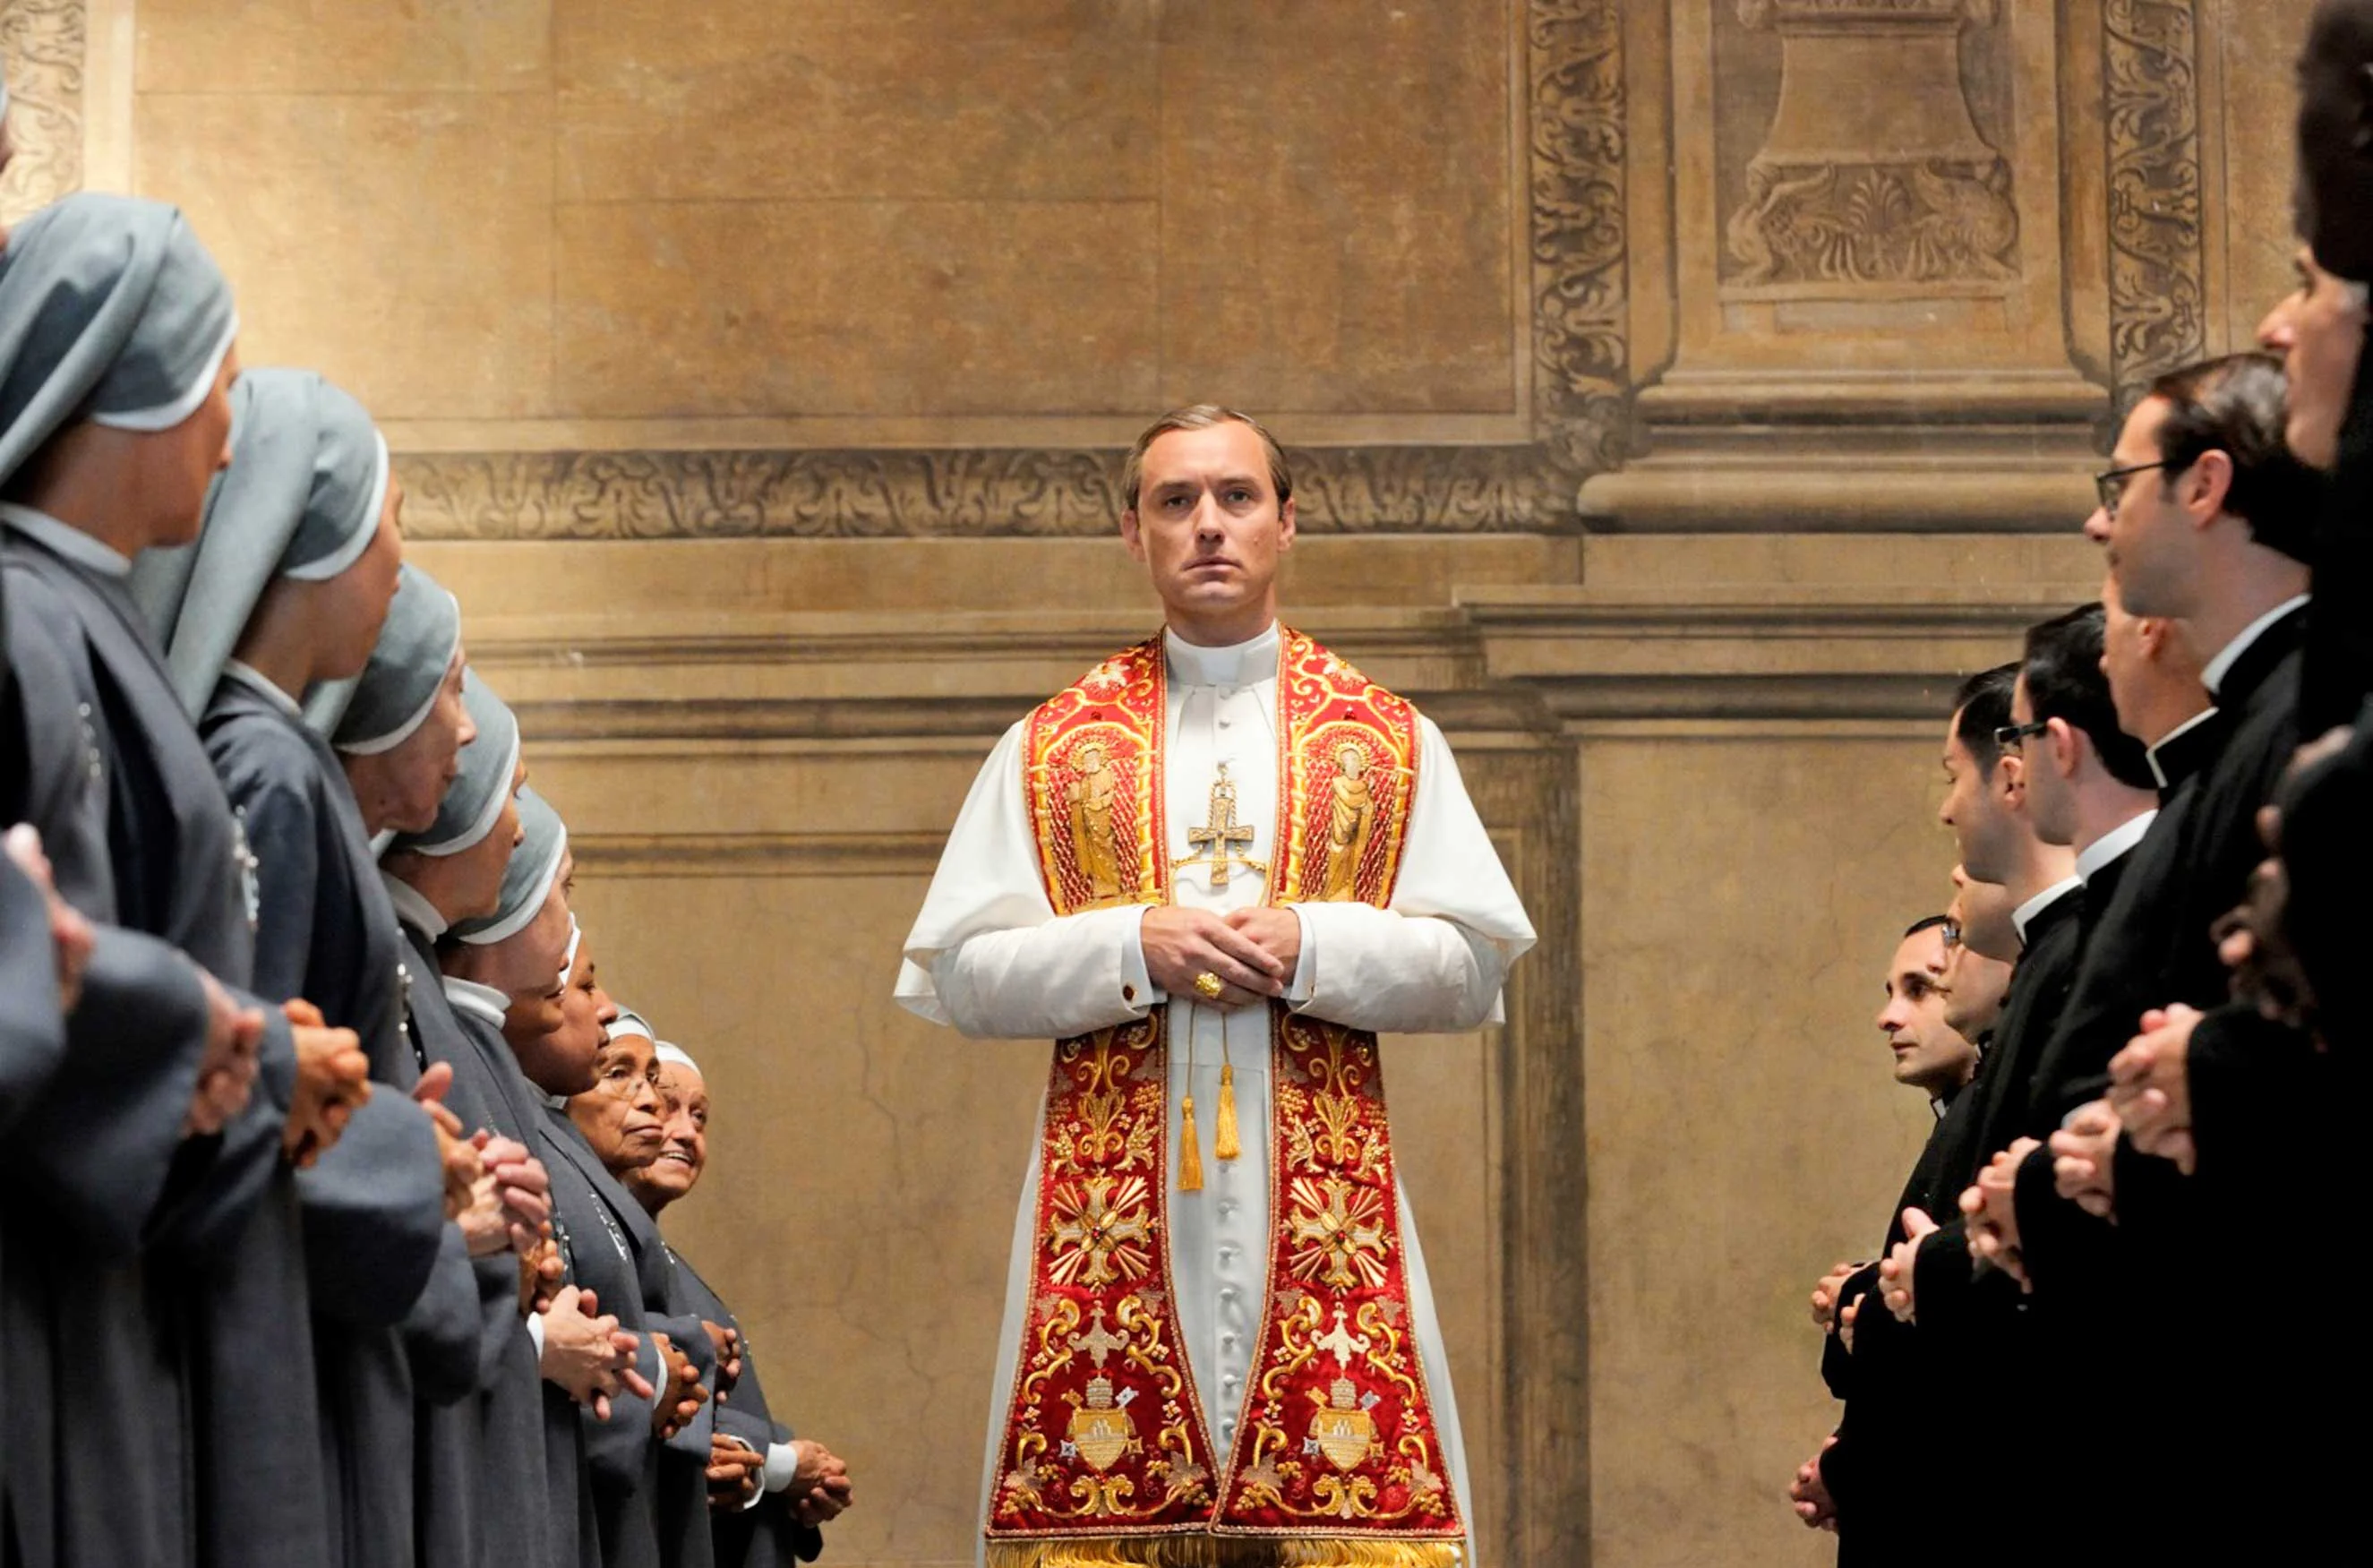 «Новый Папа» — на что способны Джуд Лоу и Джон Малкович в сиквеле потрясающего сериала Соррентино - фото 3